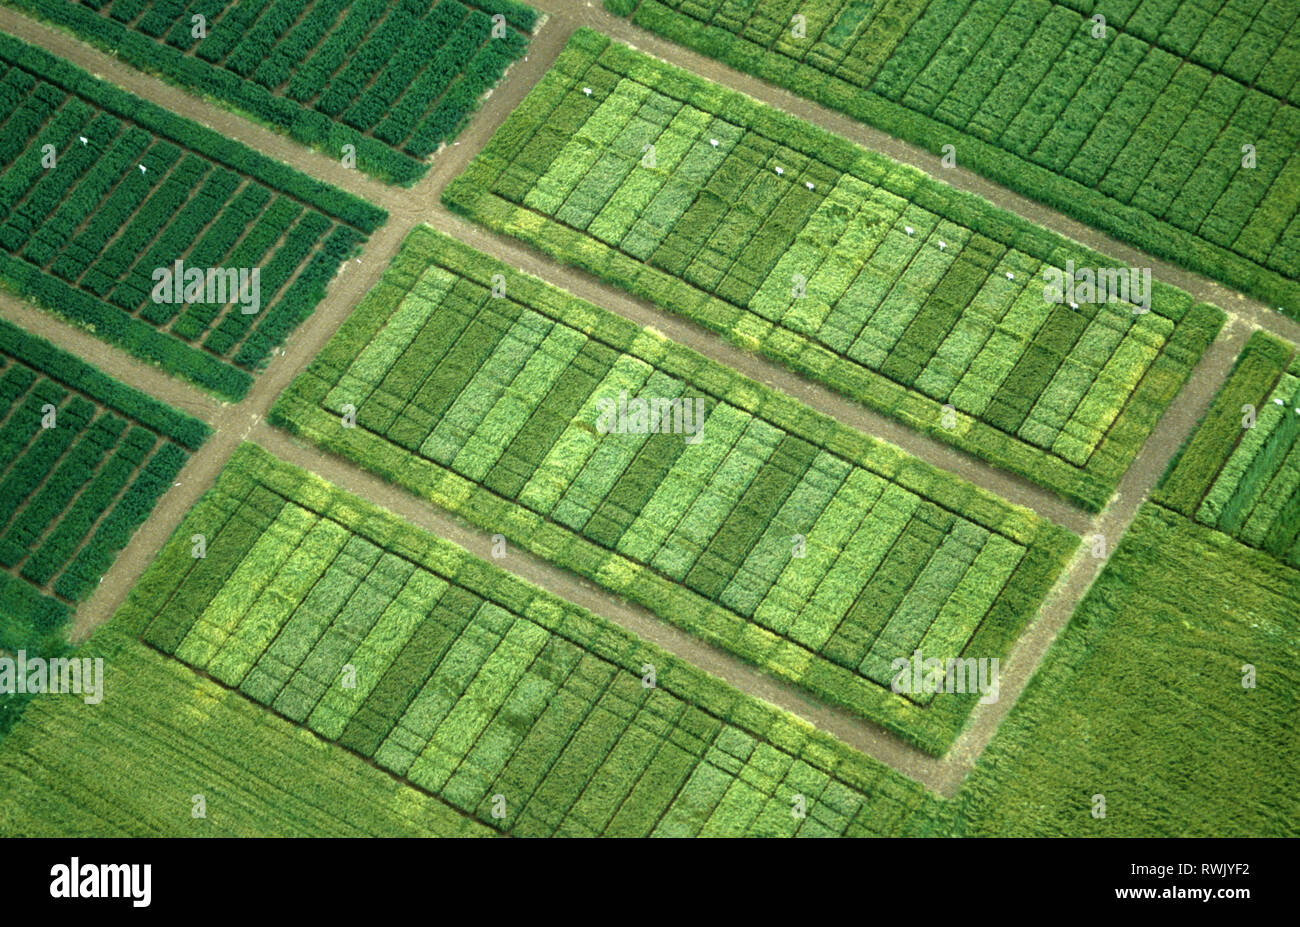 Vue aérienne de la récolte de céréales diverses parcelles d'essais pour vérifier les différences entre les variétés, le rendement, la résistance aux maladies Banque D'Images